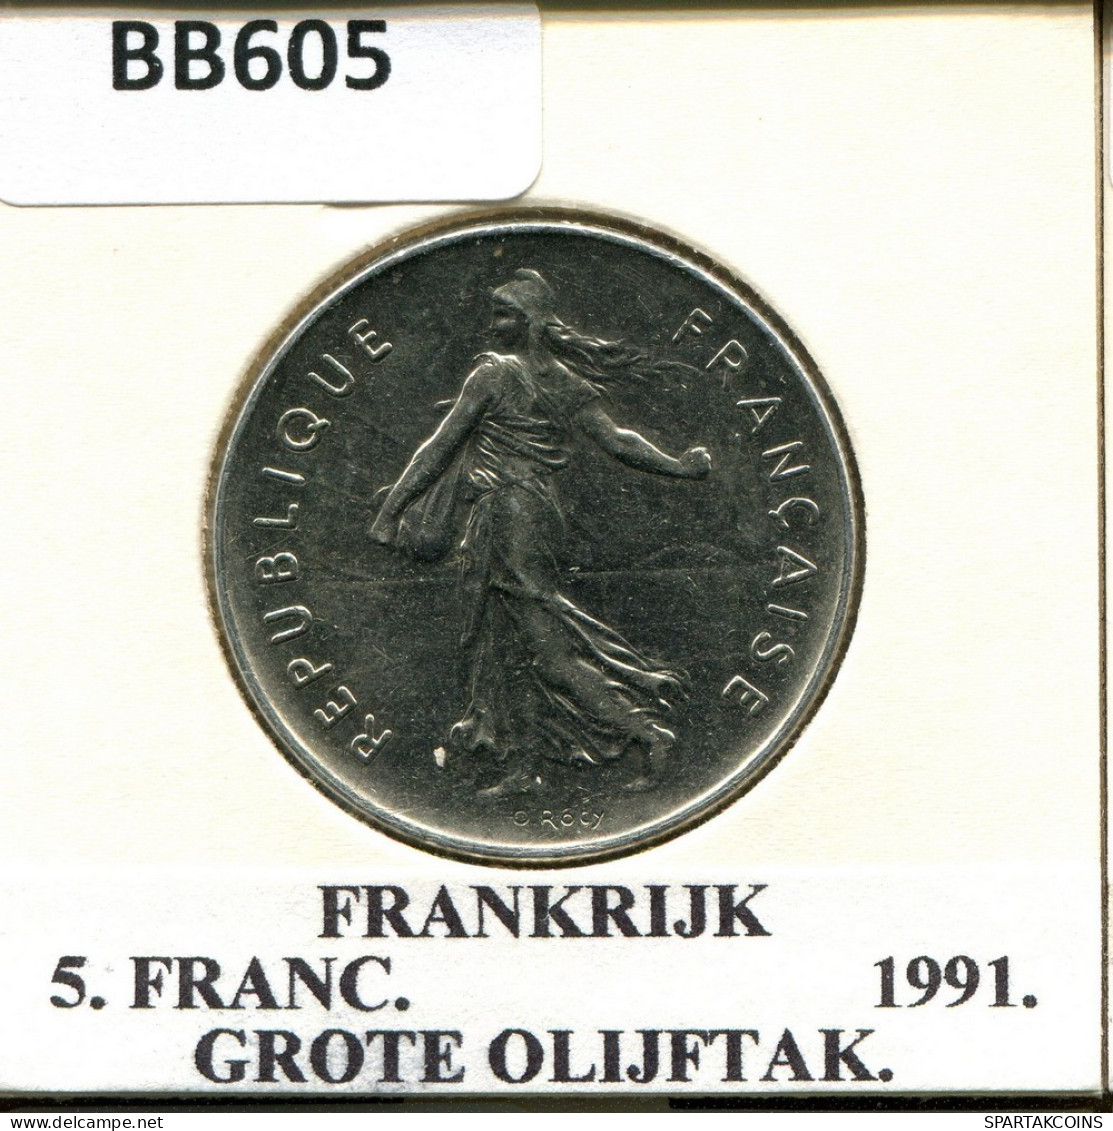 5 FRANCS 1991 FRANCIA FRANCE Moneda #BB605.E.A - 5 Francs